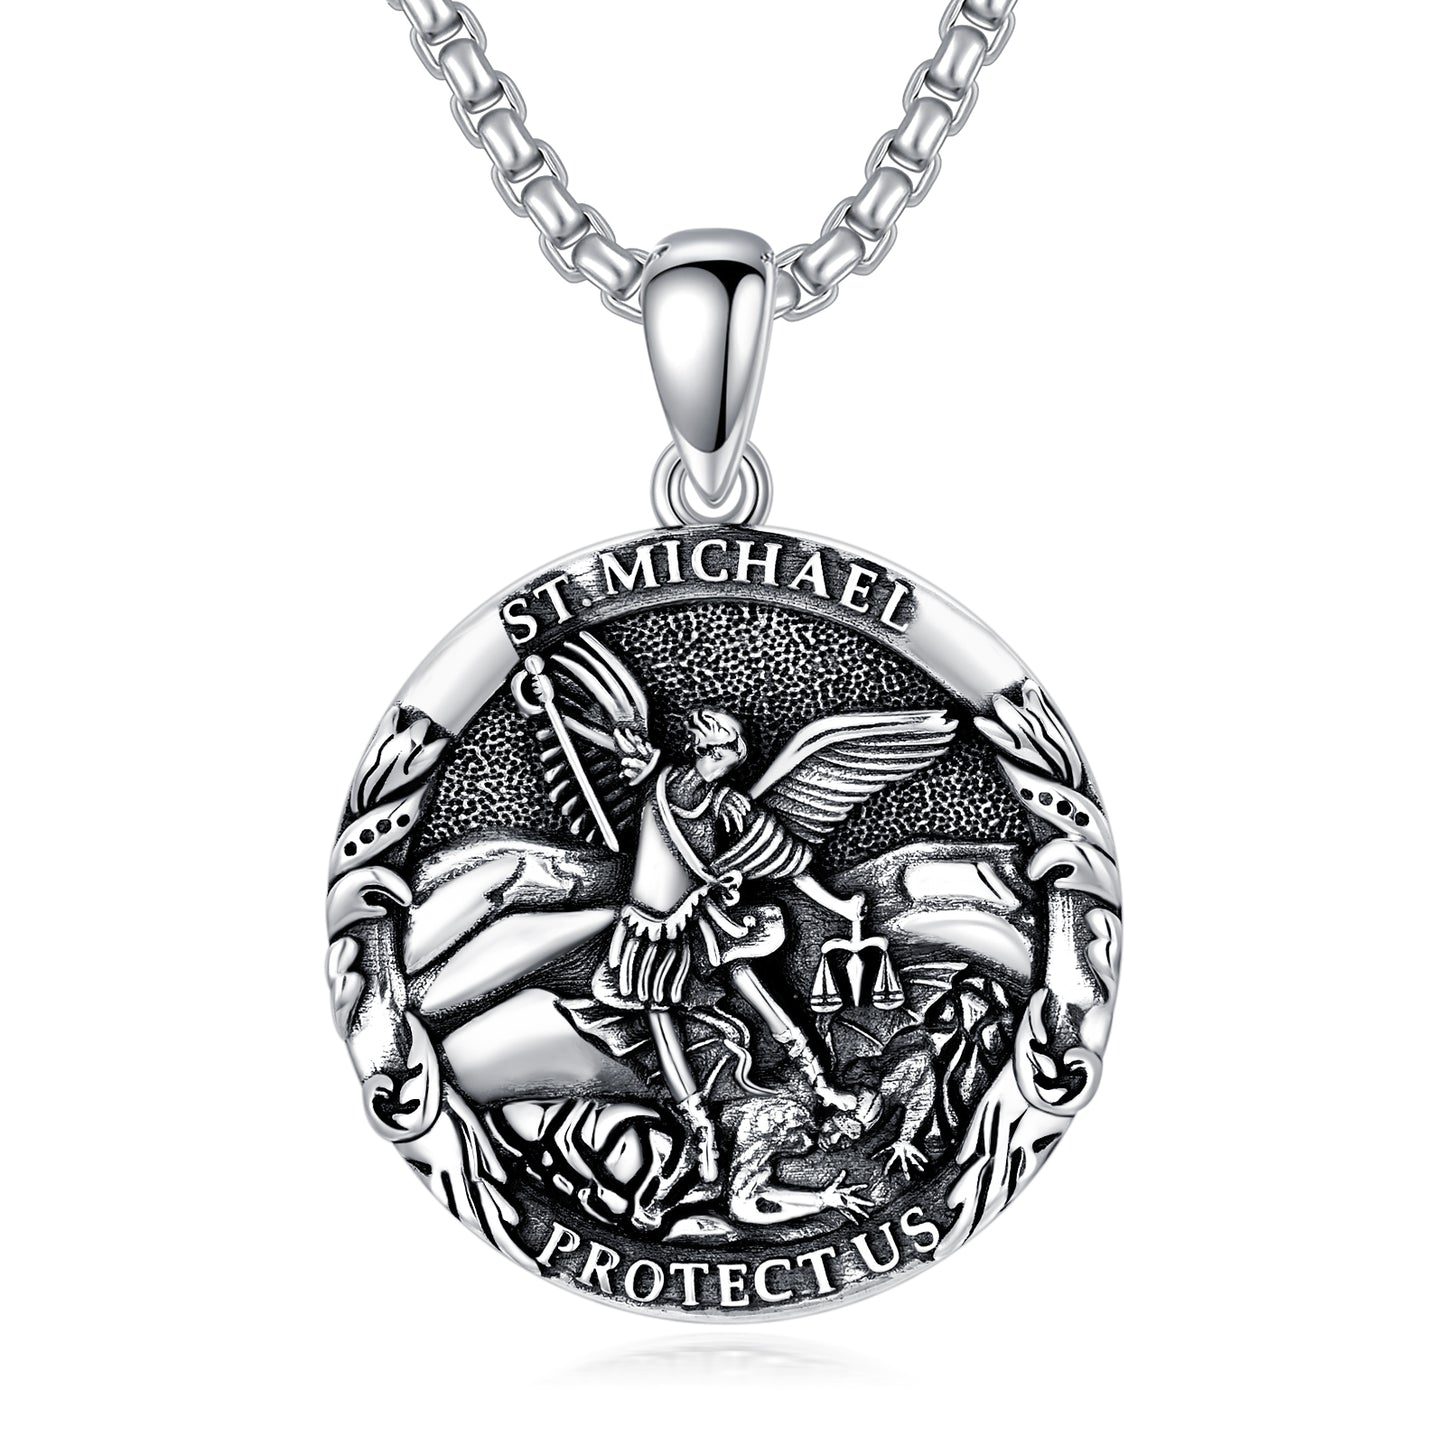 Saint Michael Medal Pendant Necklace The Archangel Catholic Medallions Amulet Silver